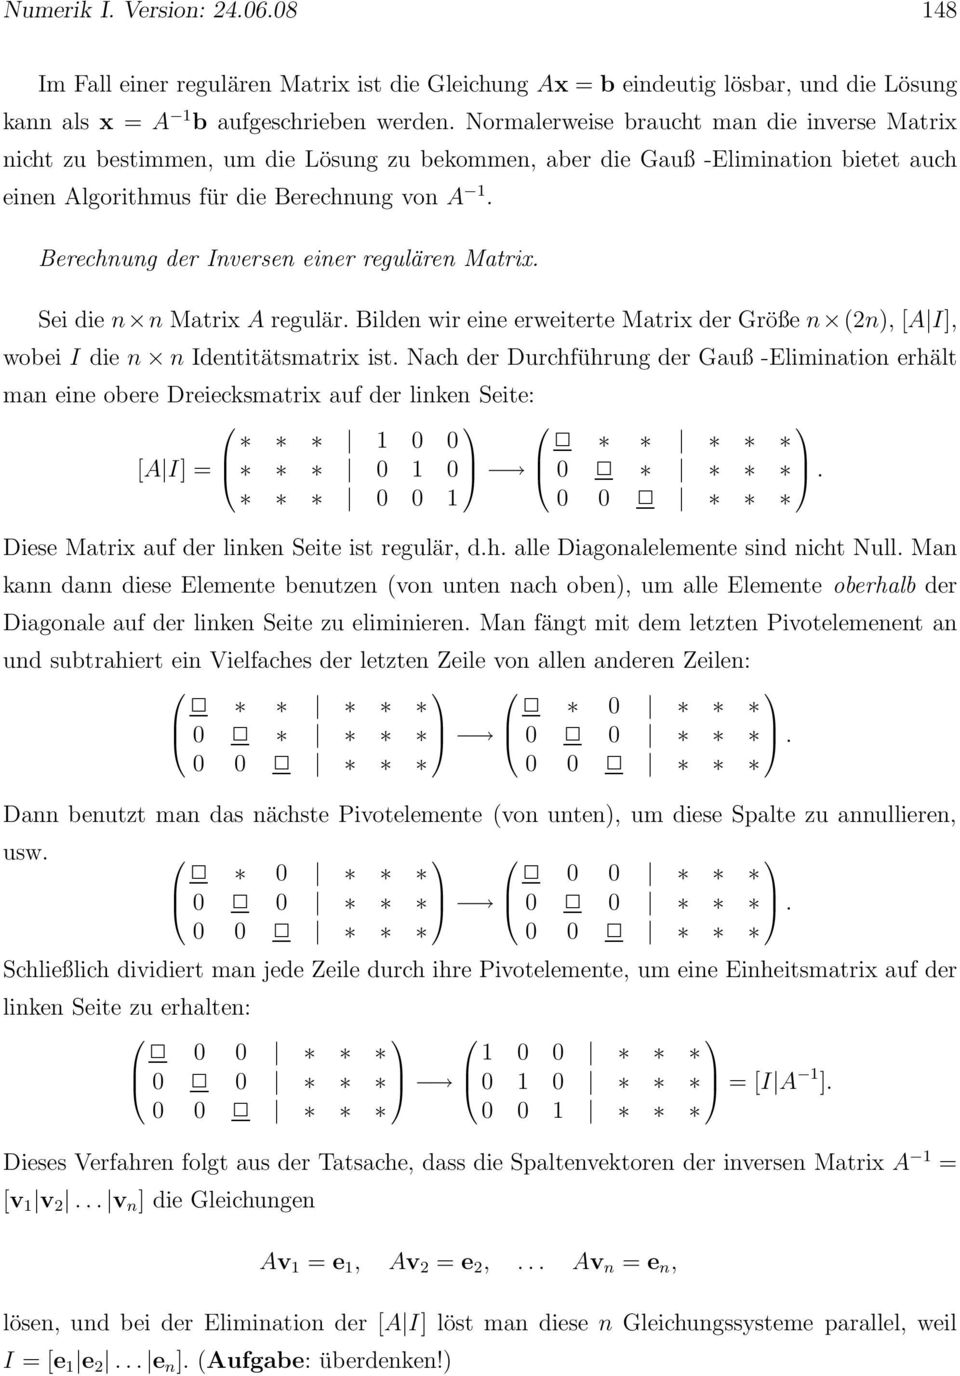 Matrix A regulär Bilden wir eine erweiterte Matrix der Größe n (2n), [A I], wobei I die n n Identitätsmatrix ist Nach der Durchführung der Gauß -Elimination erhält man eine obere Dreiecksmatrix auf